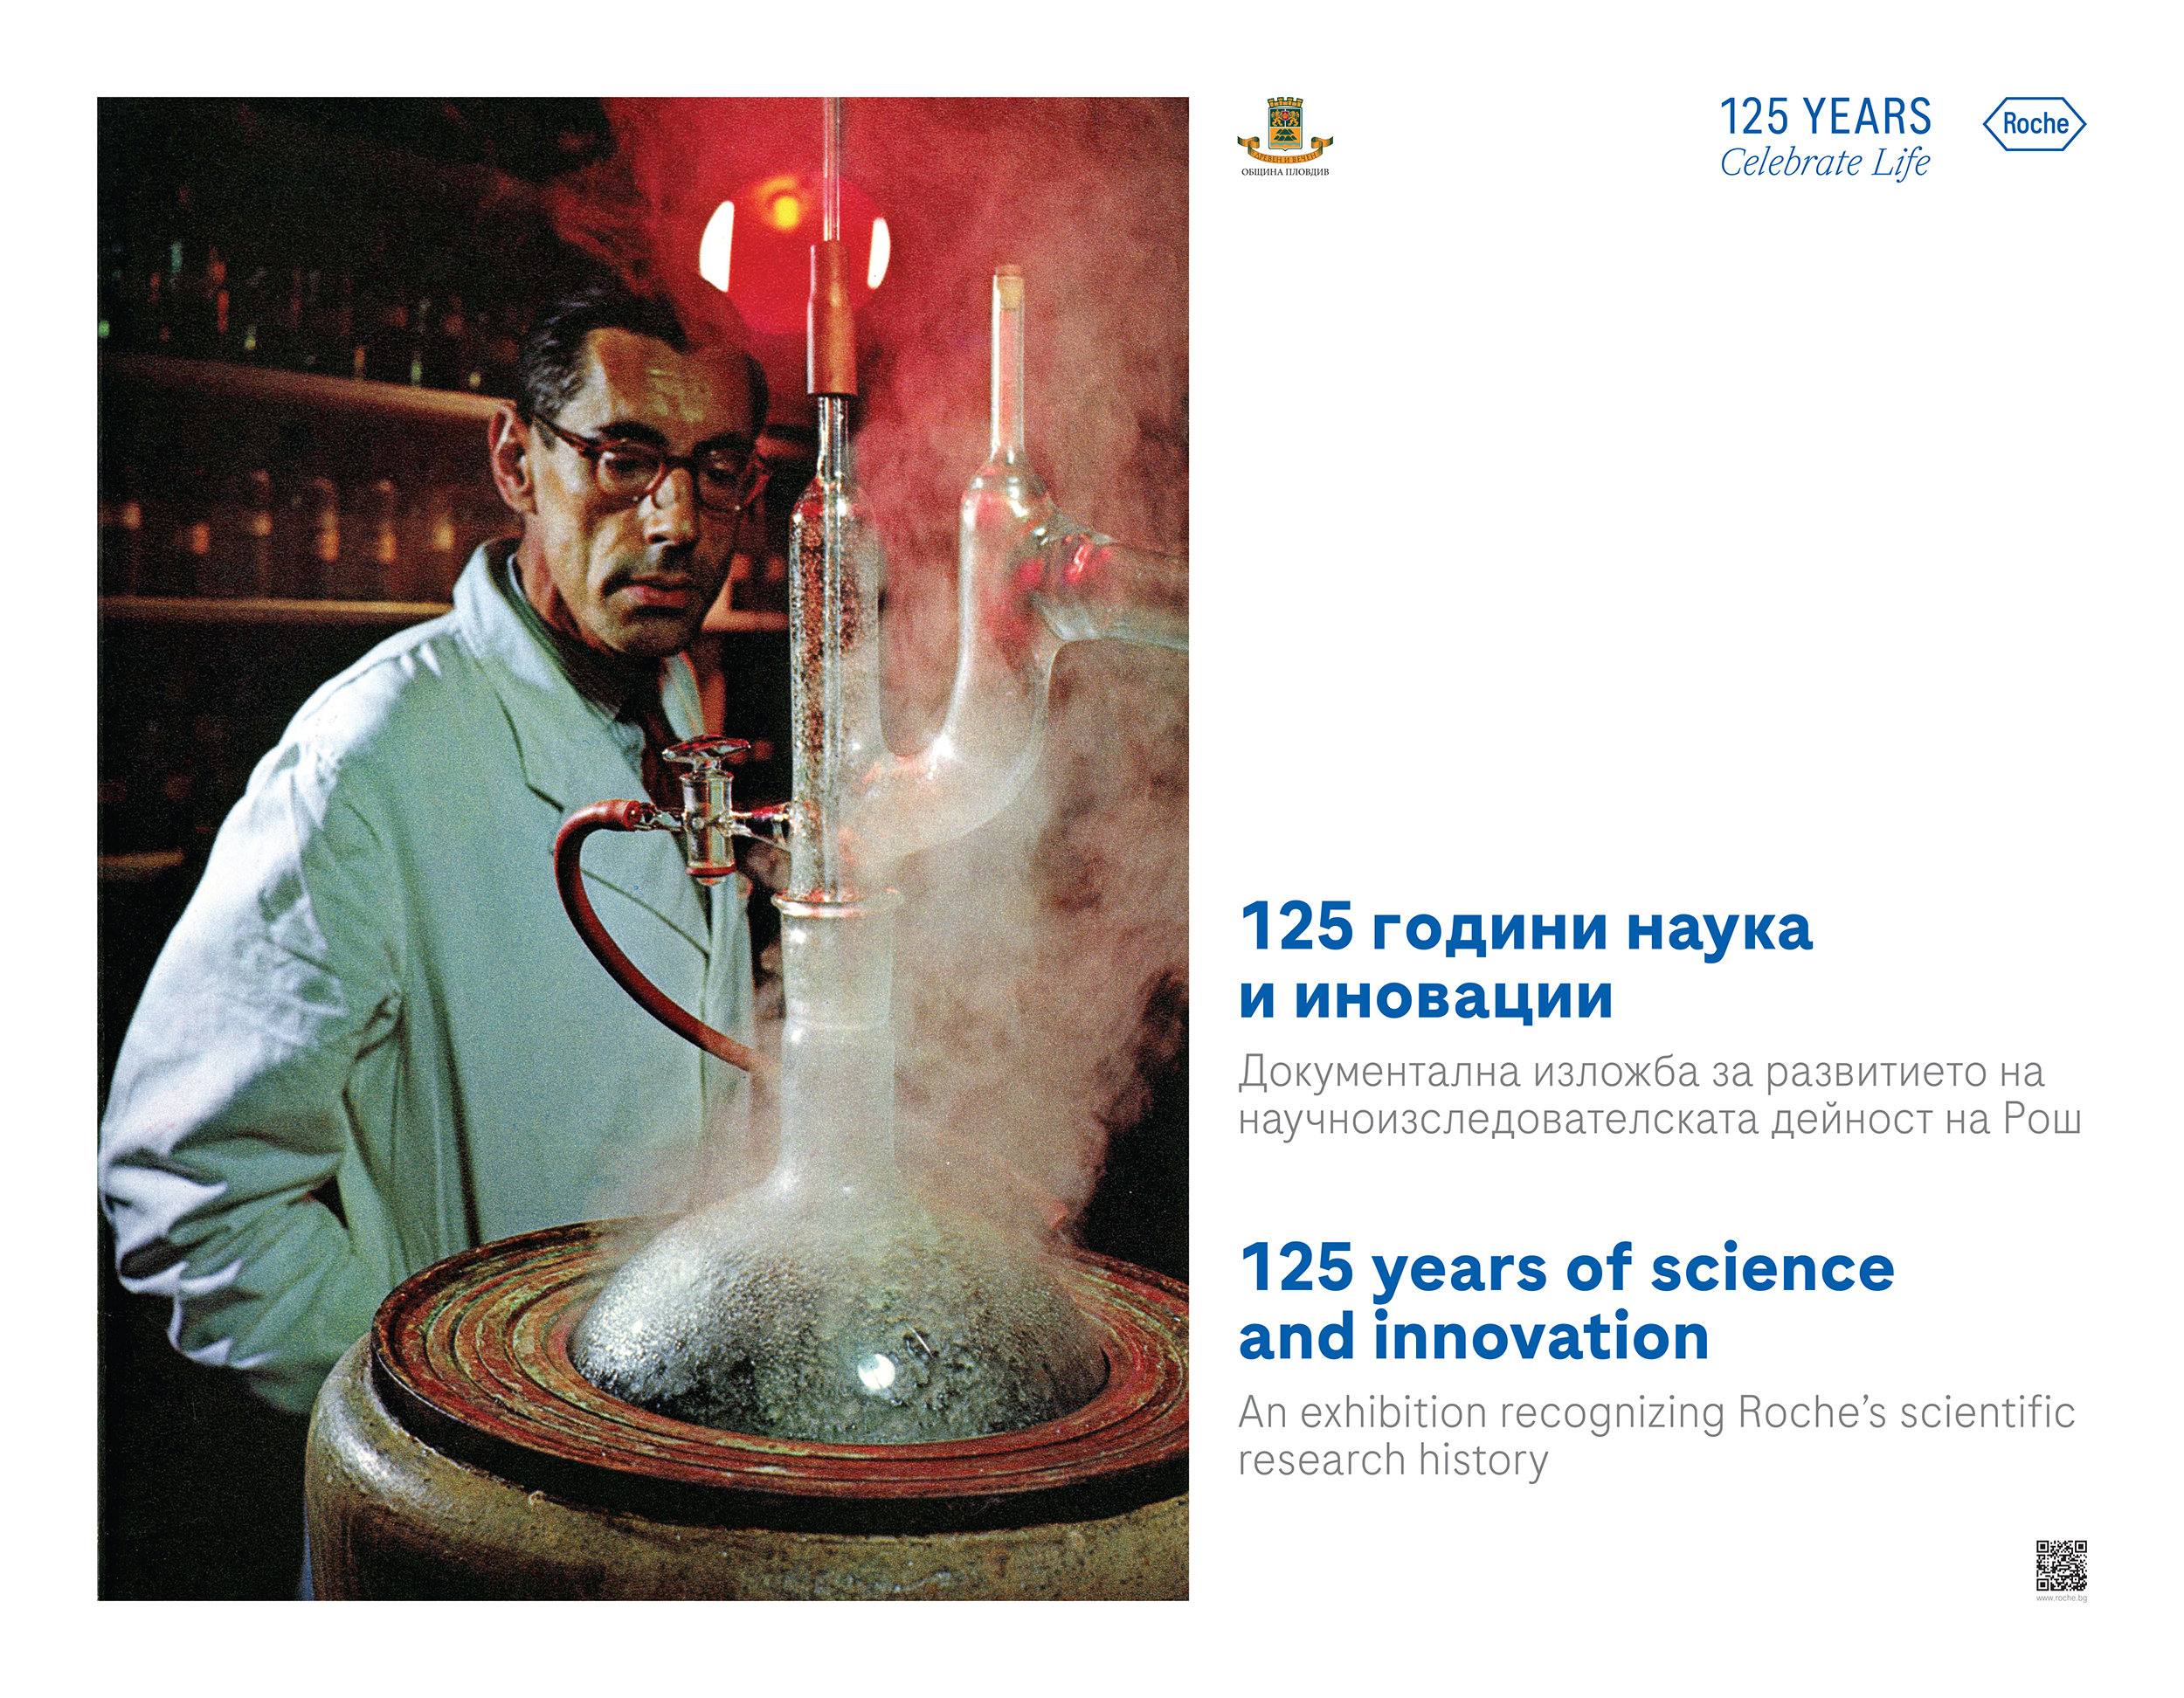 Документална изложба “125 години - наука и иновации” представя научни достижения в медицината и фармацията